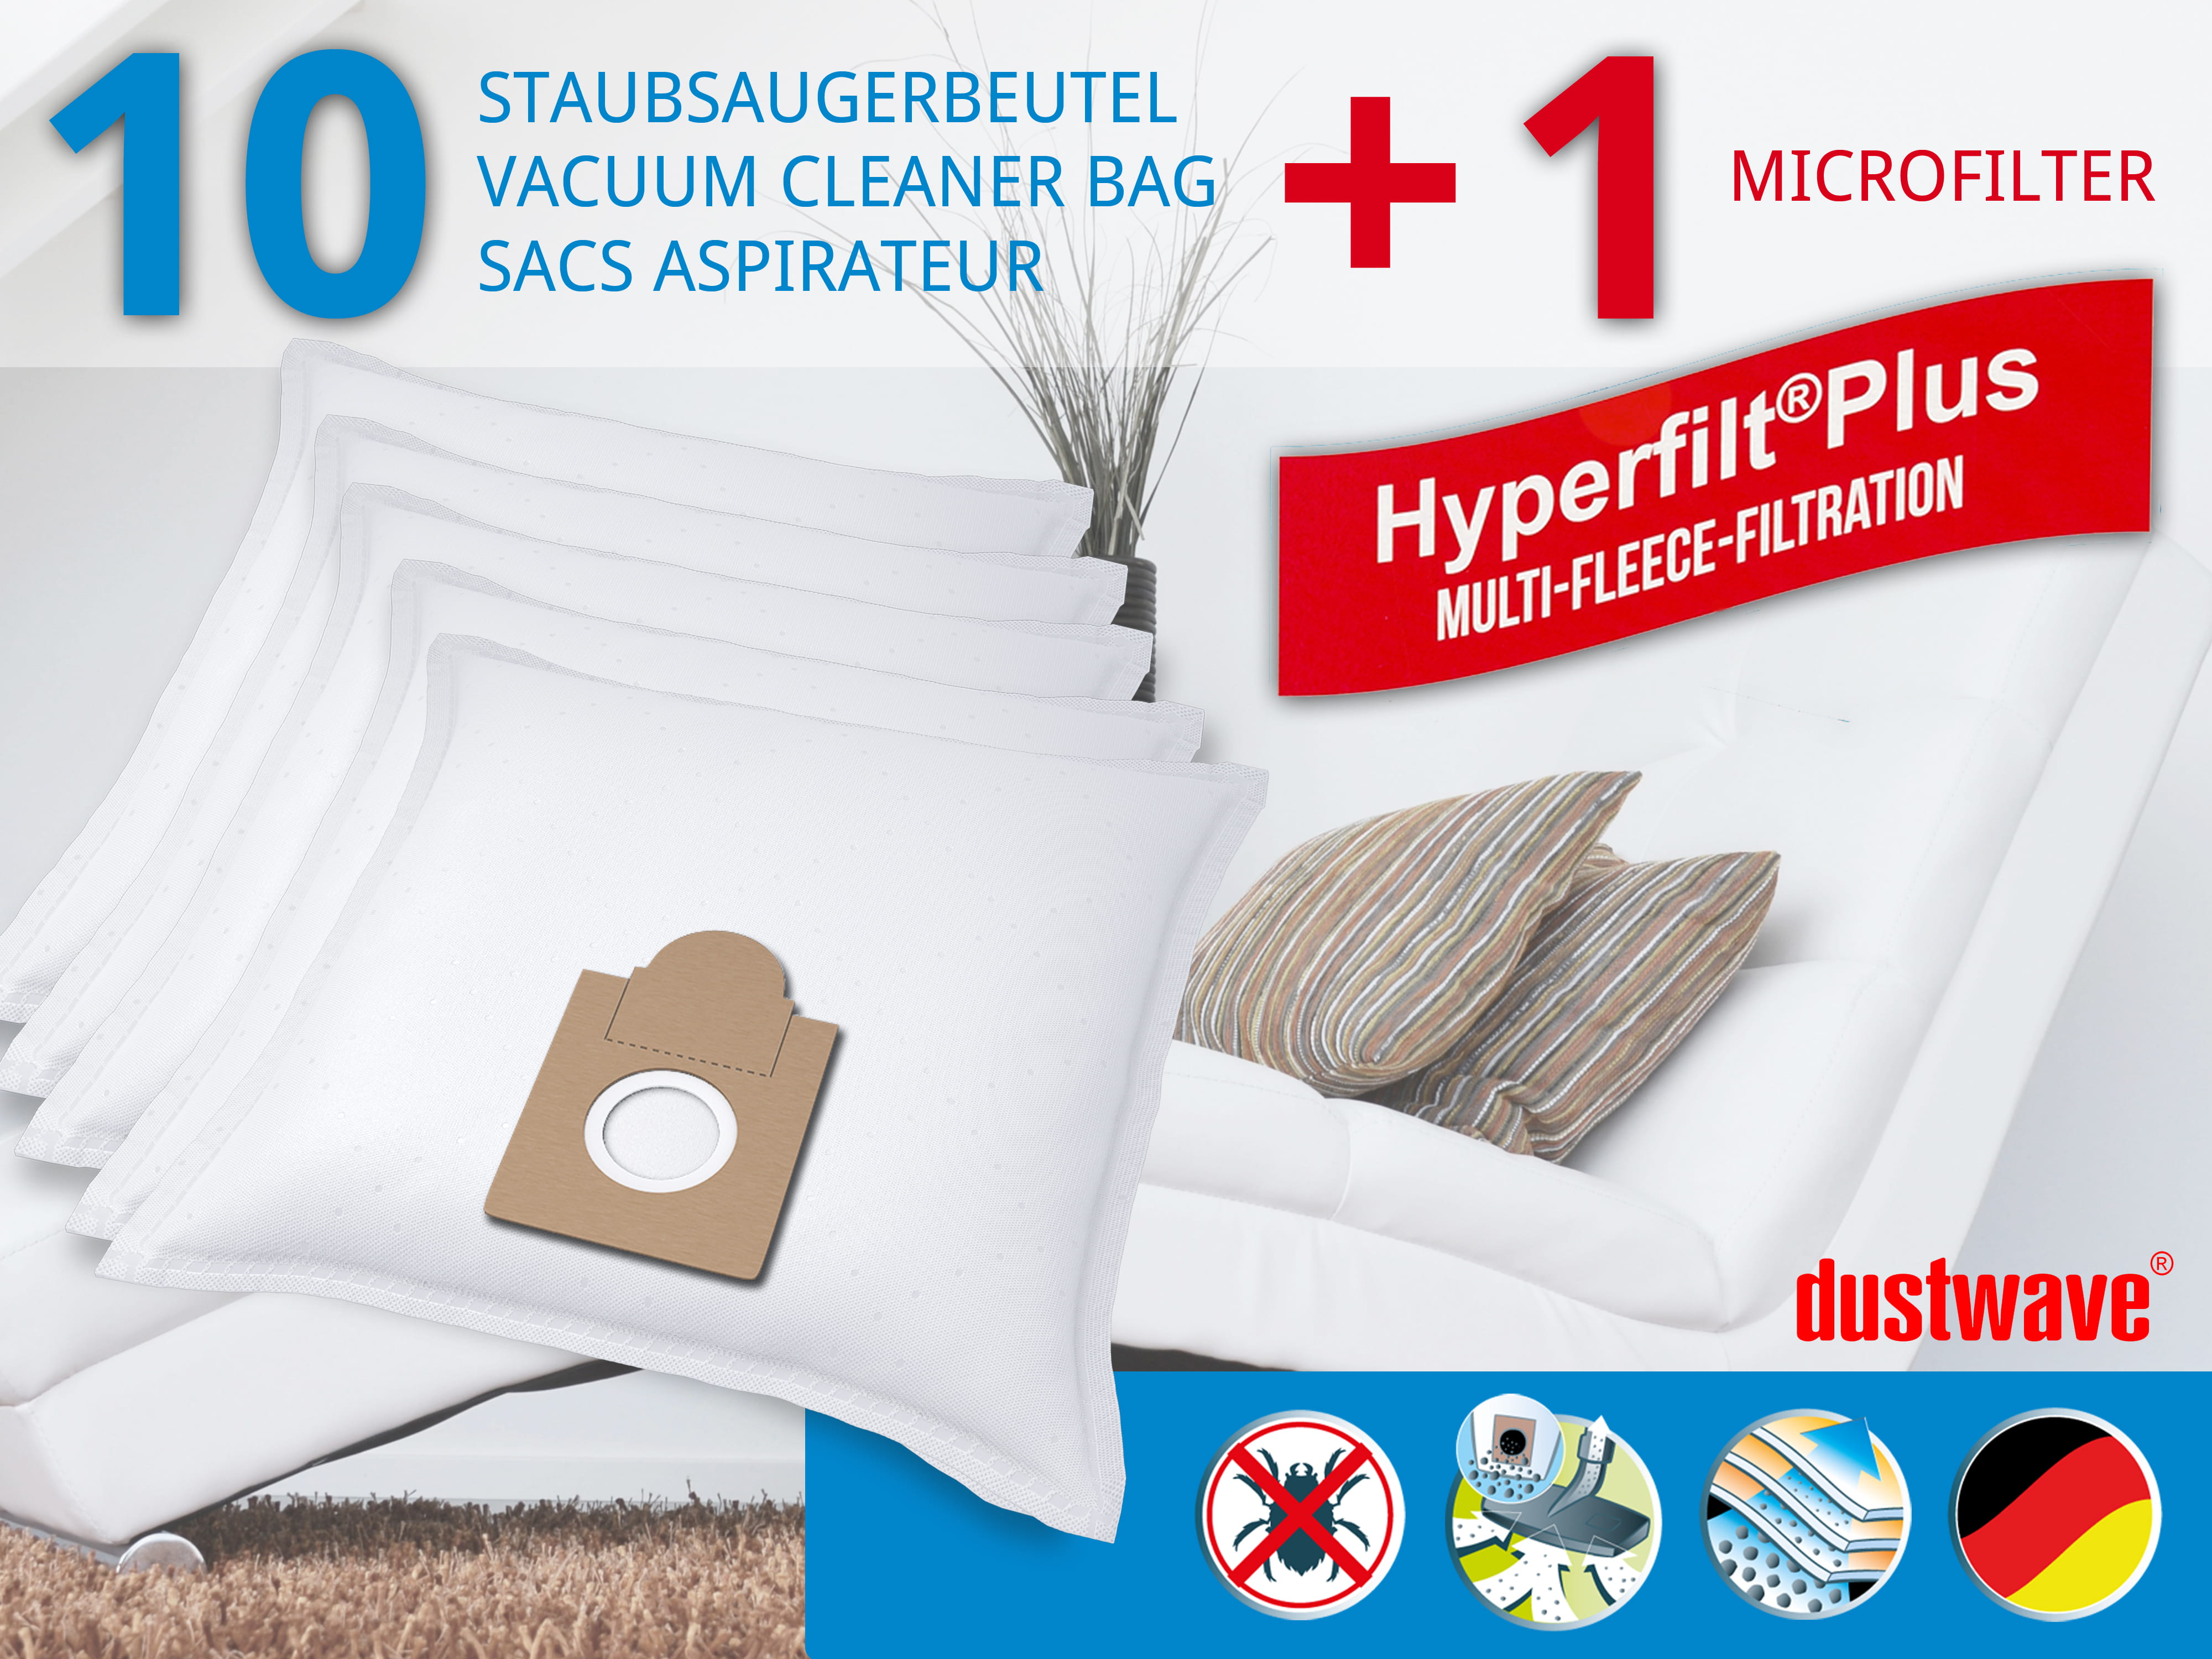 Dustwave® 10 Staubsaugerbeutel für Ariete Aspirium 2386 - hocheffizient, mehrlagiges Mikrovlies mit Hygieneverschluss - Made in Germany